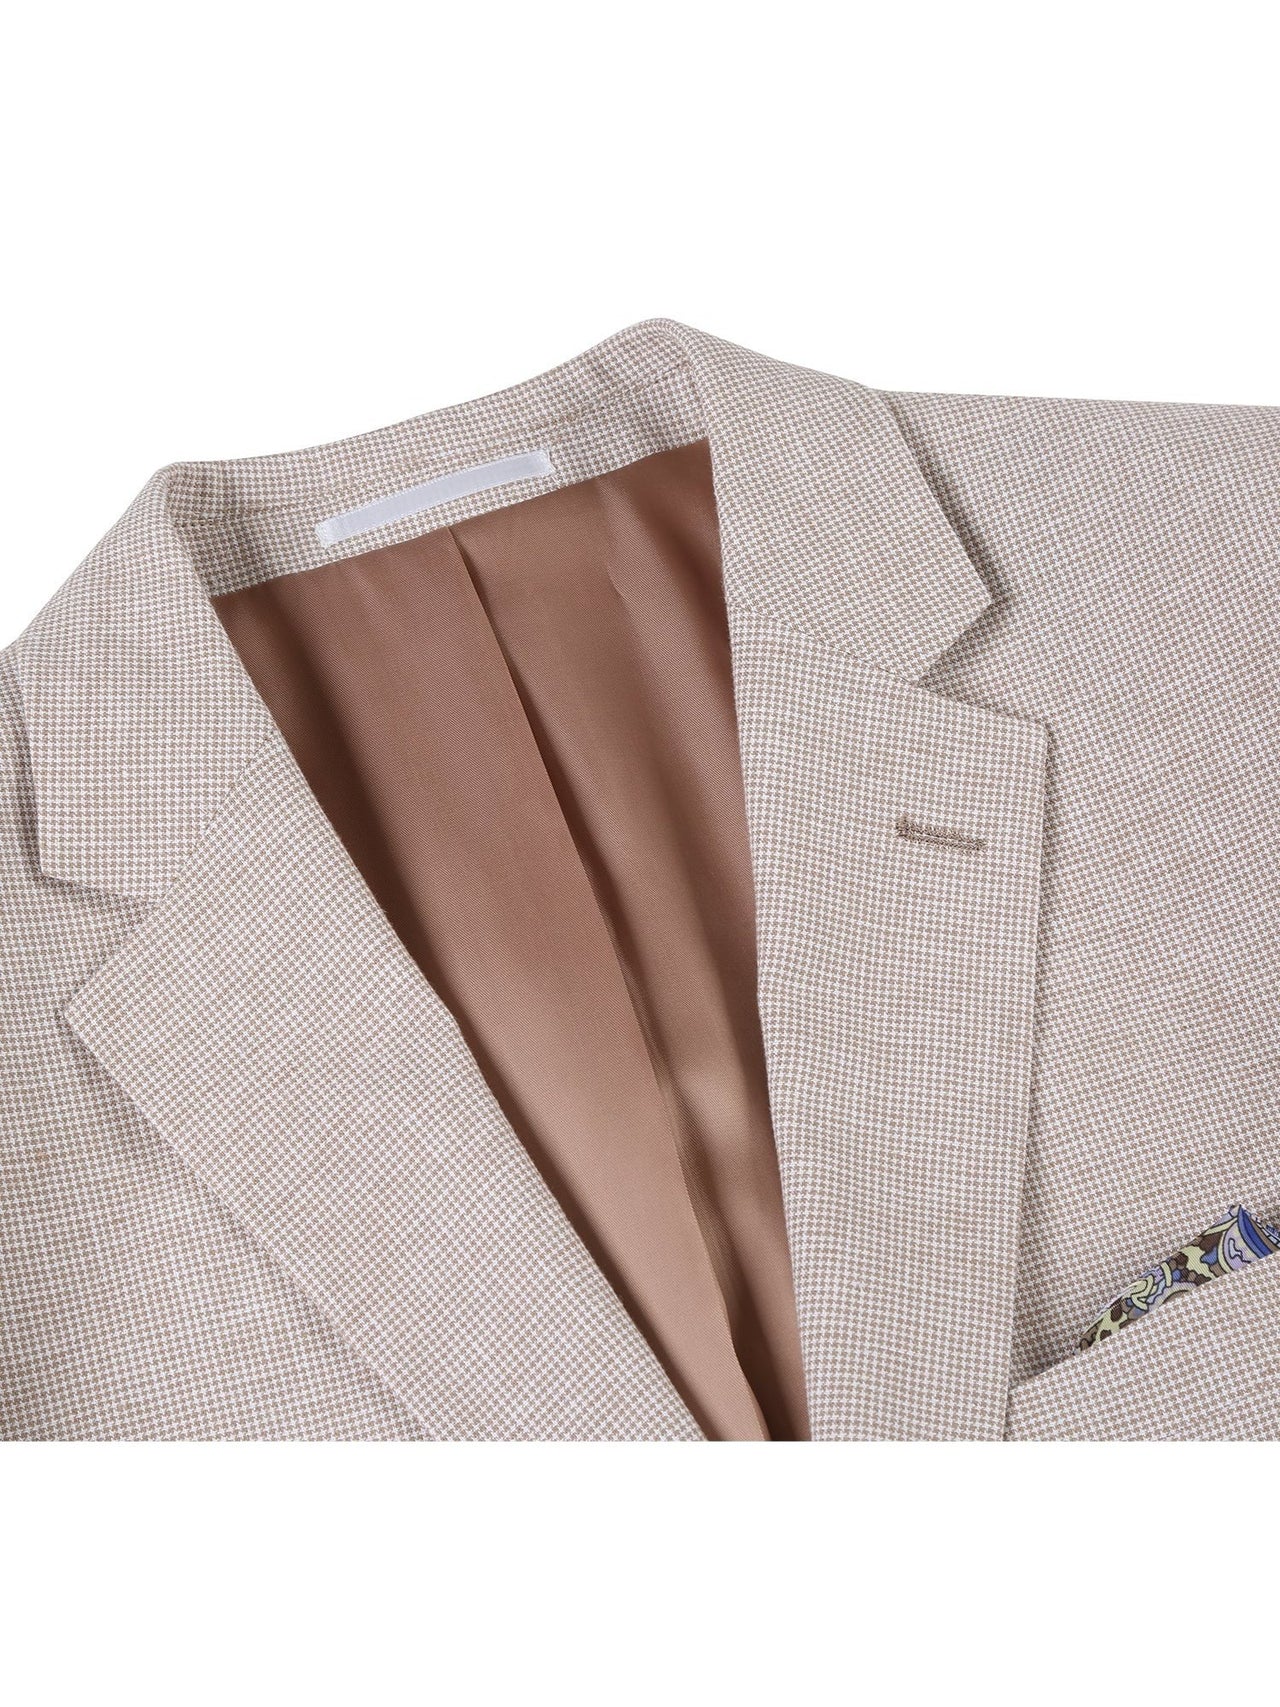 Men's Classic Fit Blazer Linen/Cotton Sport Coat